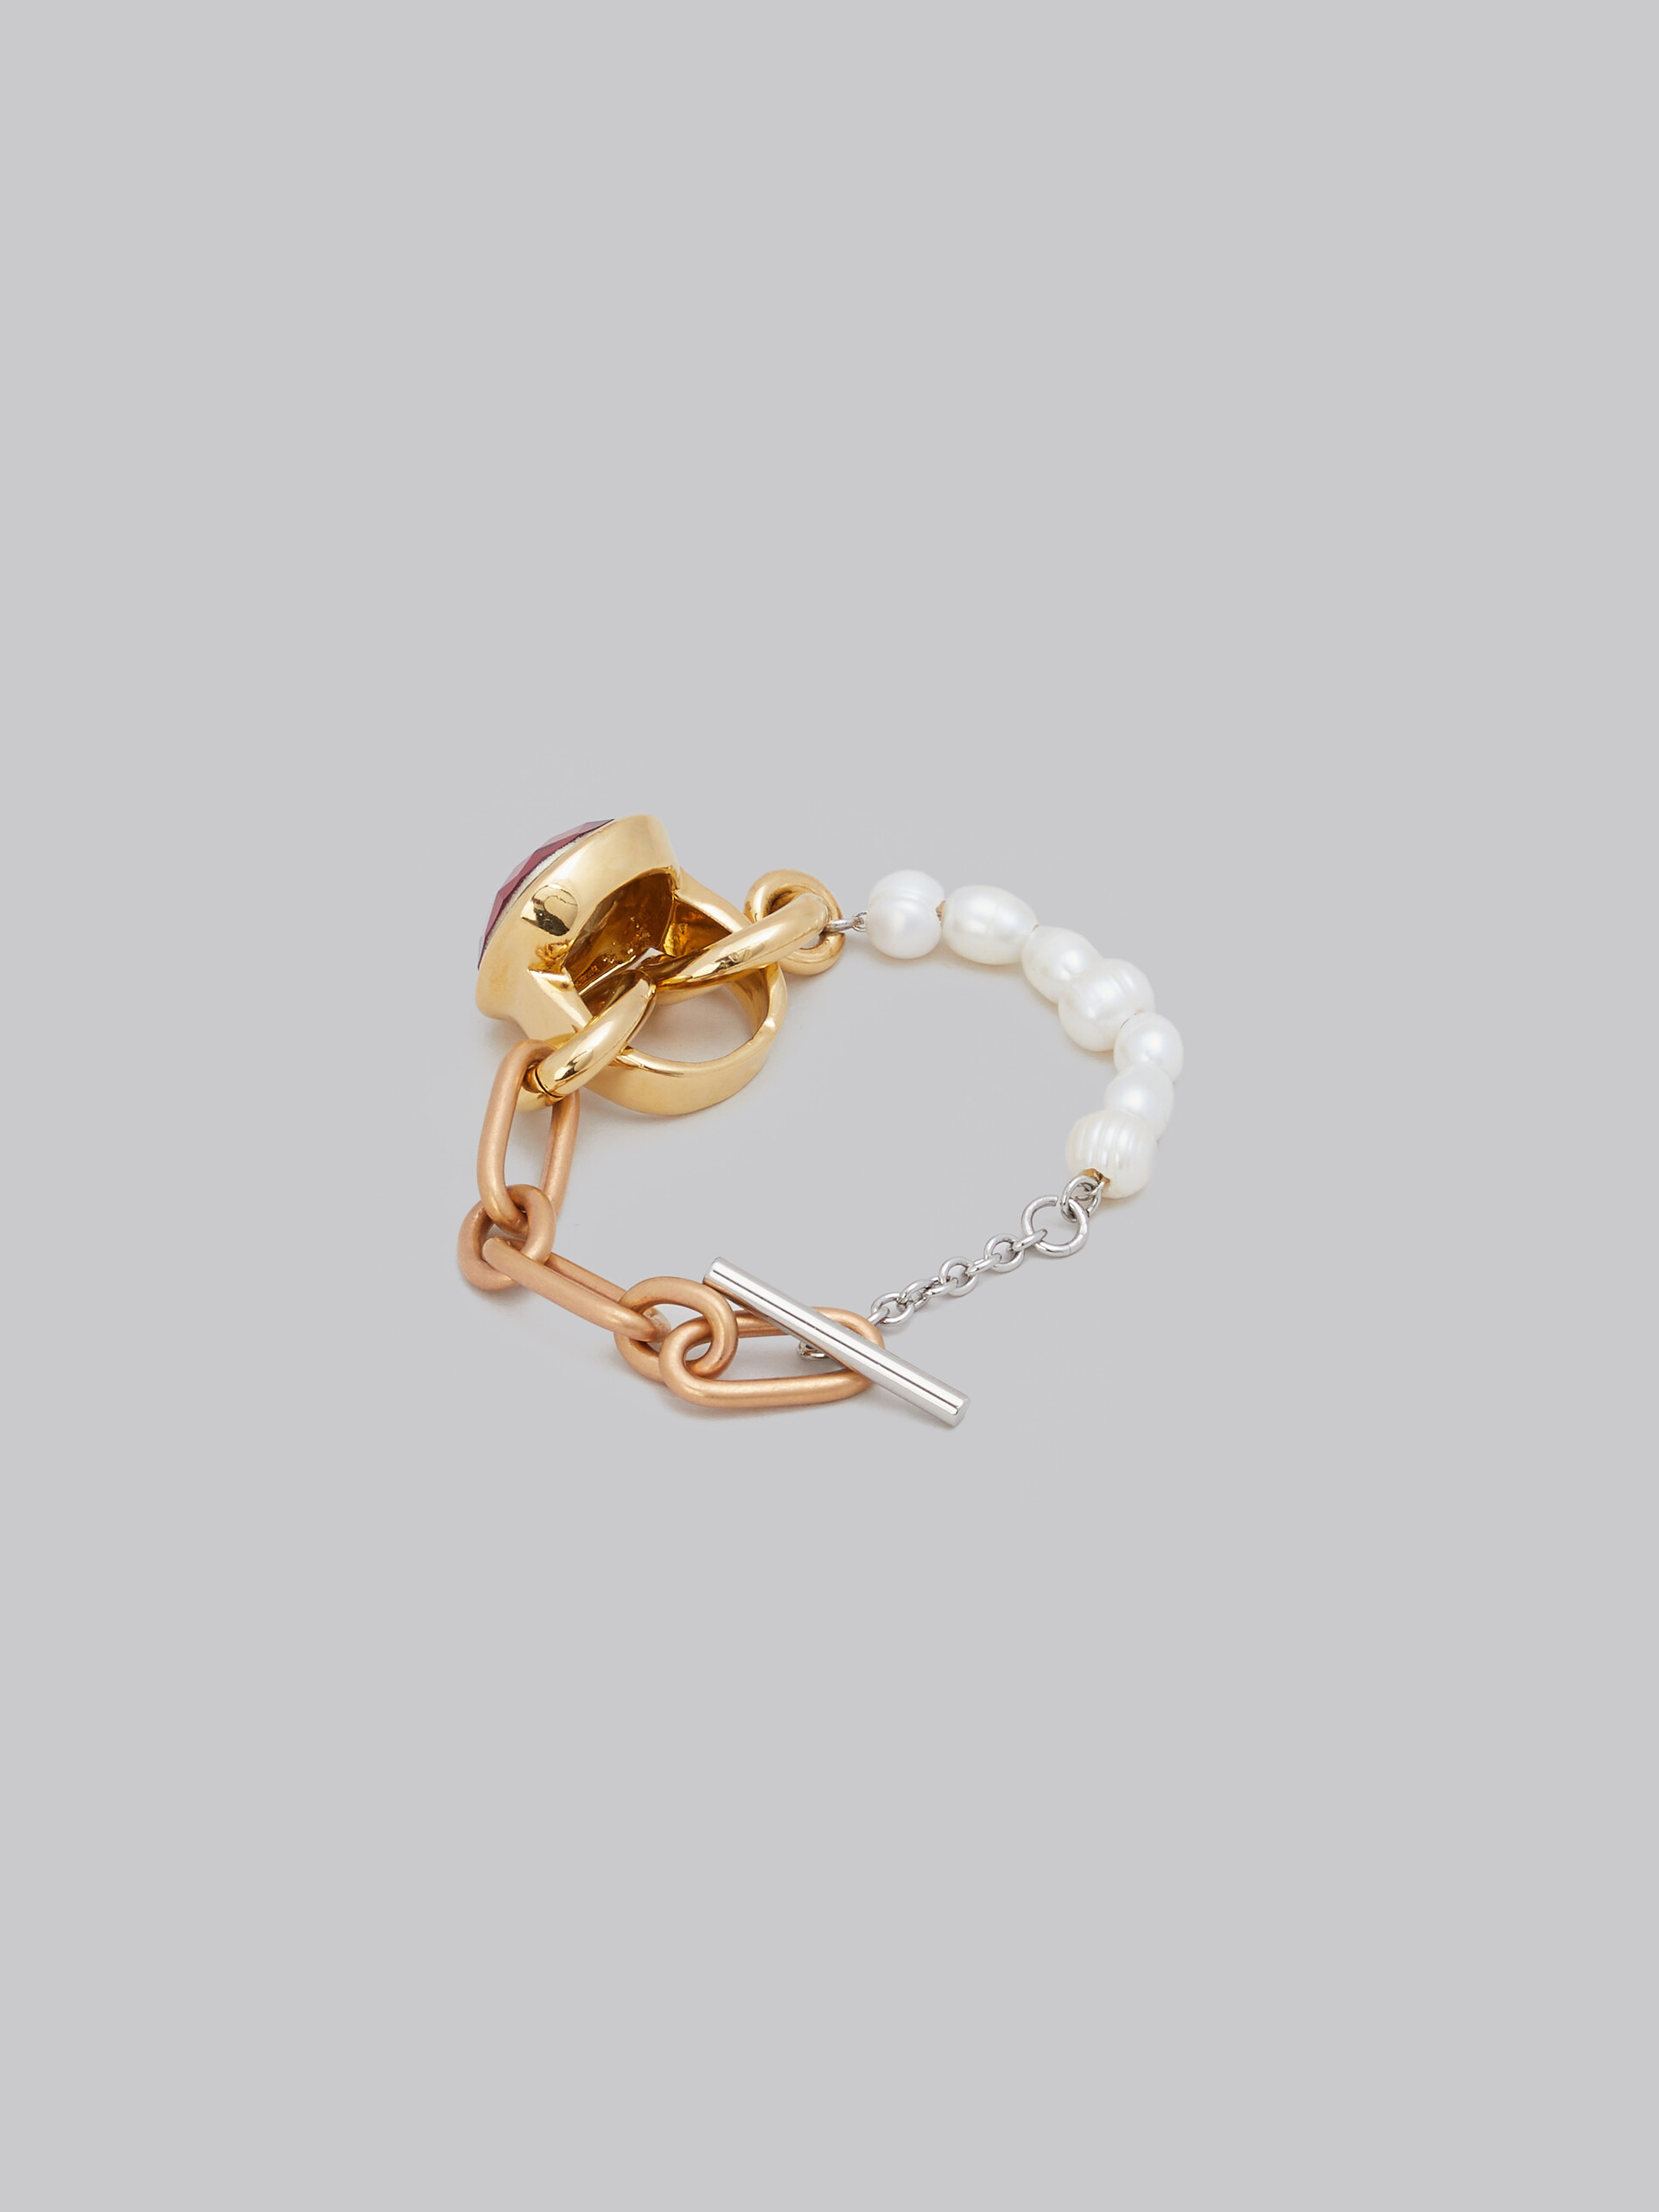 Bracelet en chaîne avec différents maillons, perles et anneau - Bracelets - Image 3